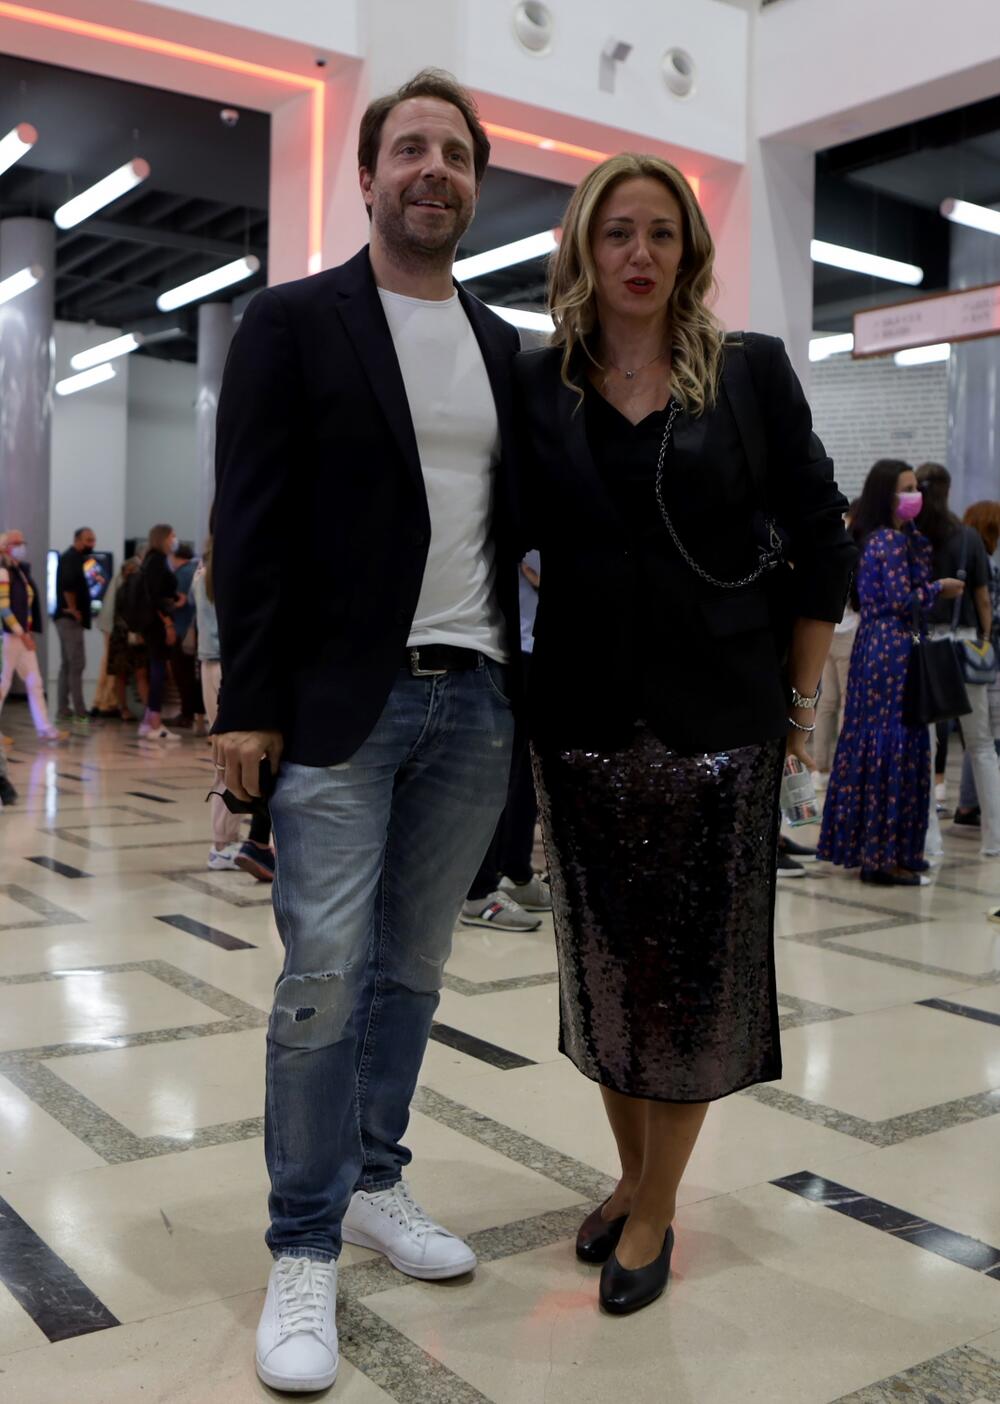 Glumac Gordan Kičić sa suprugom Zoranom